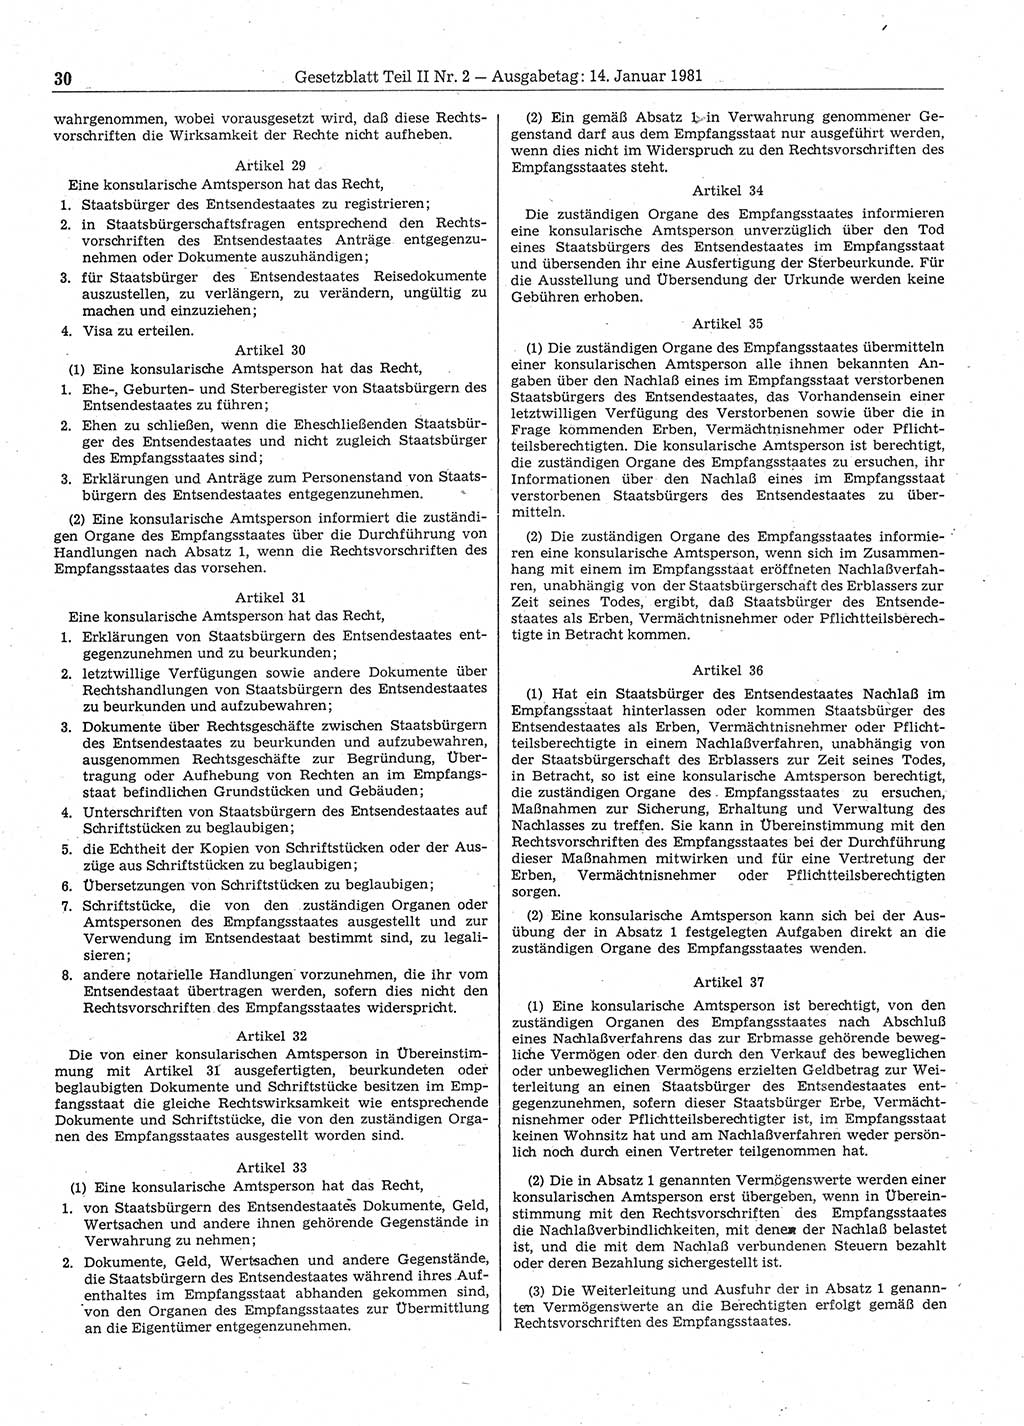 Gesetzblatt (GBl.) der Deutschen Demokratischen Republik (DDR) Teil ⅠⅠ 1981, Seite 30 (GBl. DDR ⅠⅠ 1981, S. 30)